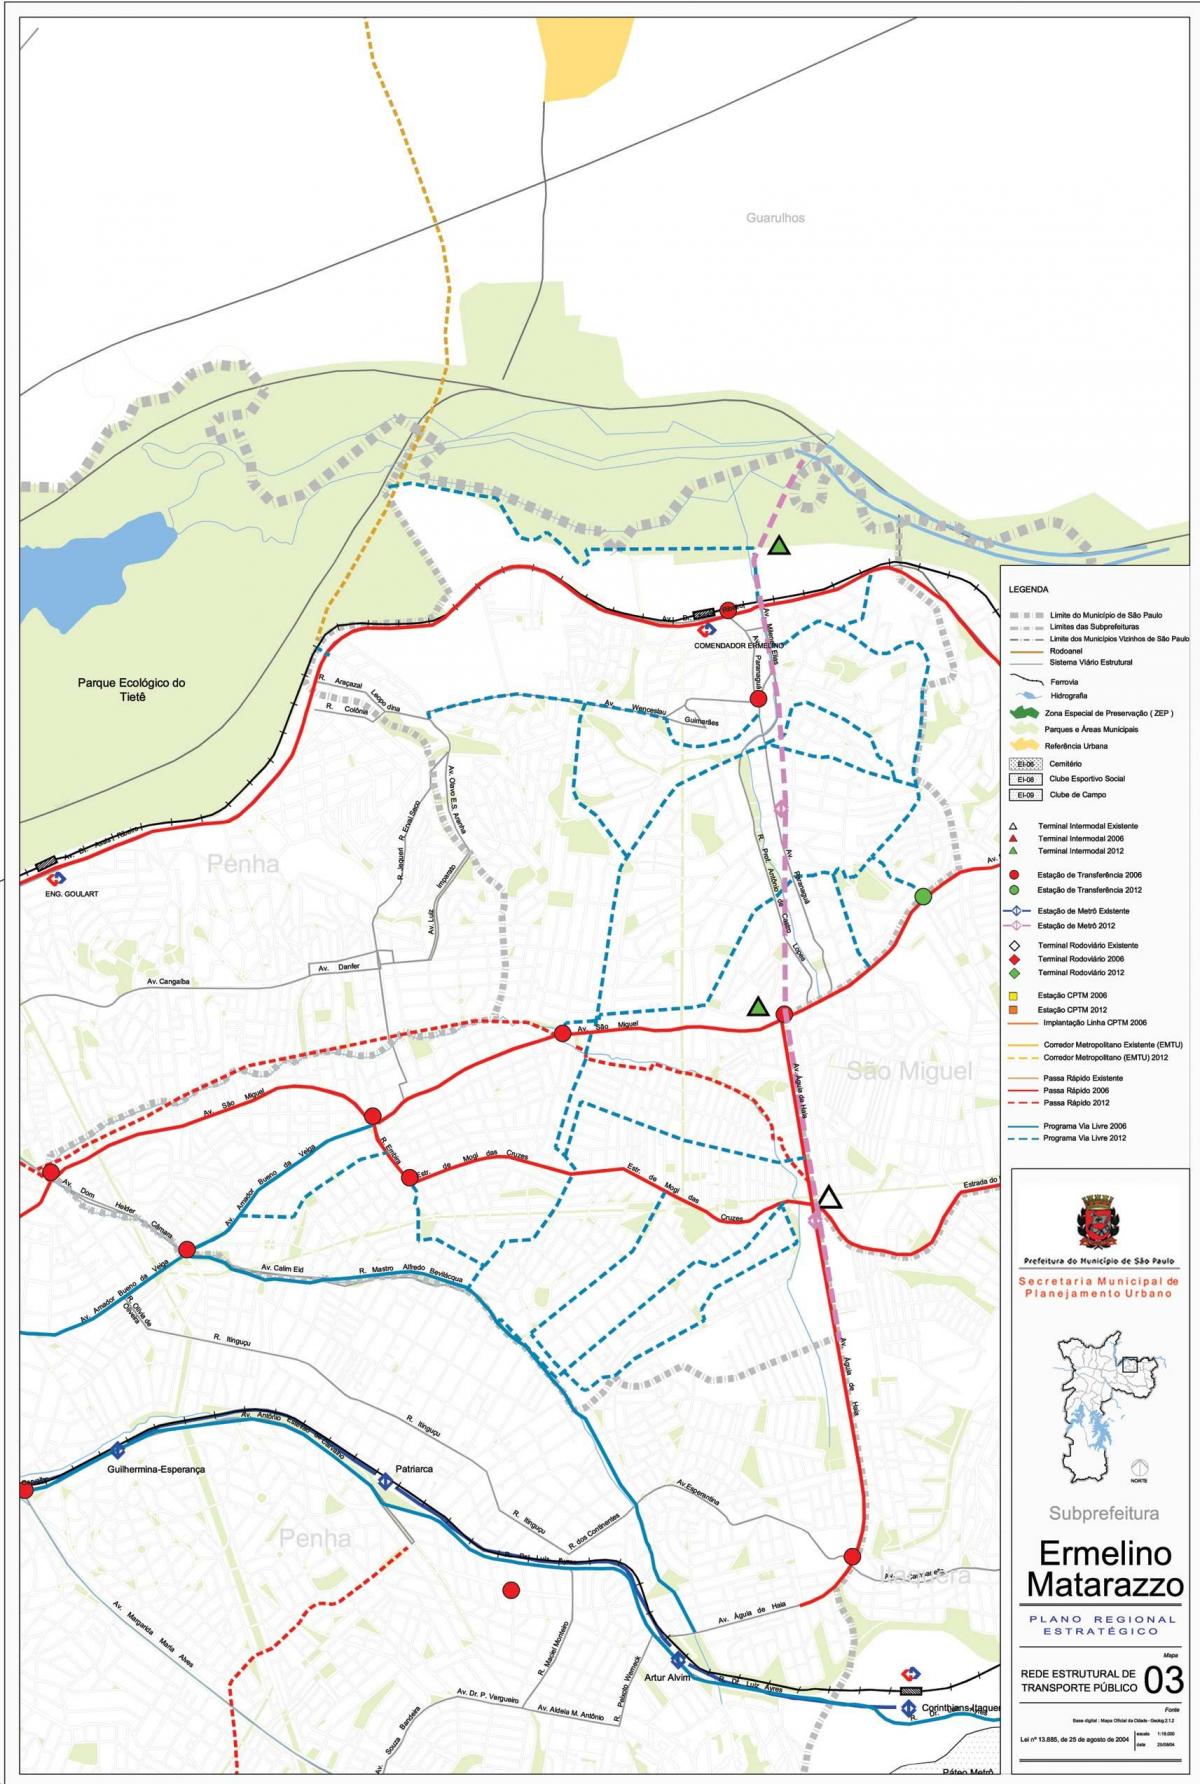 Mapa de Ermelino Matarazzo São Paulo - transportes Públicos